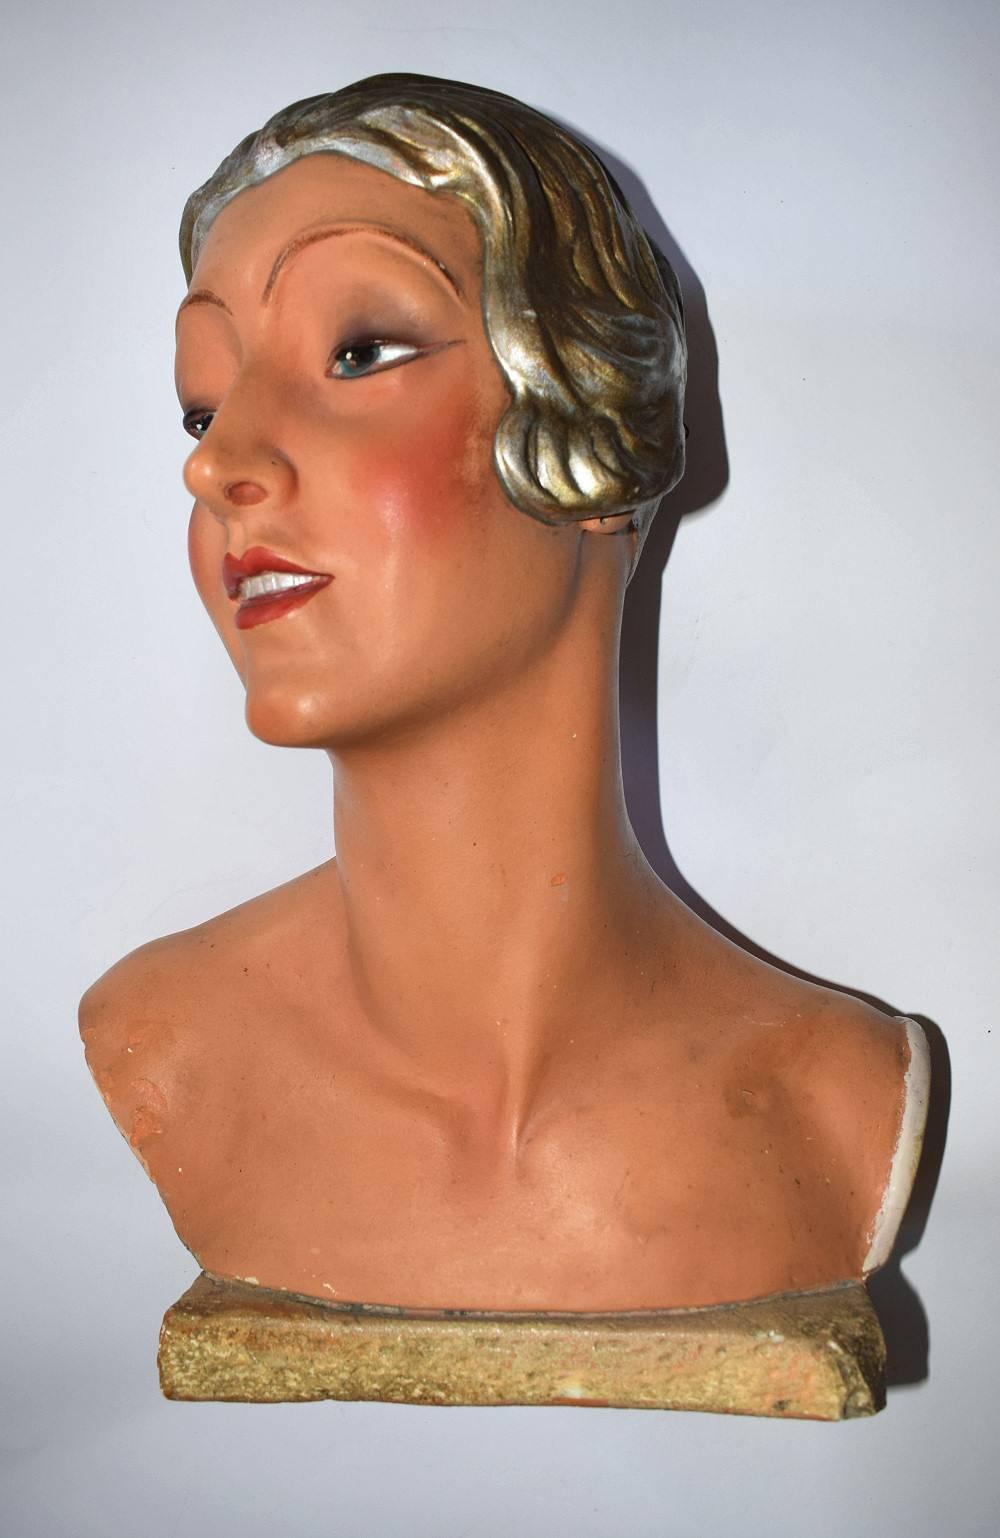 Great Britain (UK) Rare 1930s Art Deco English Female Shop Mannequin